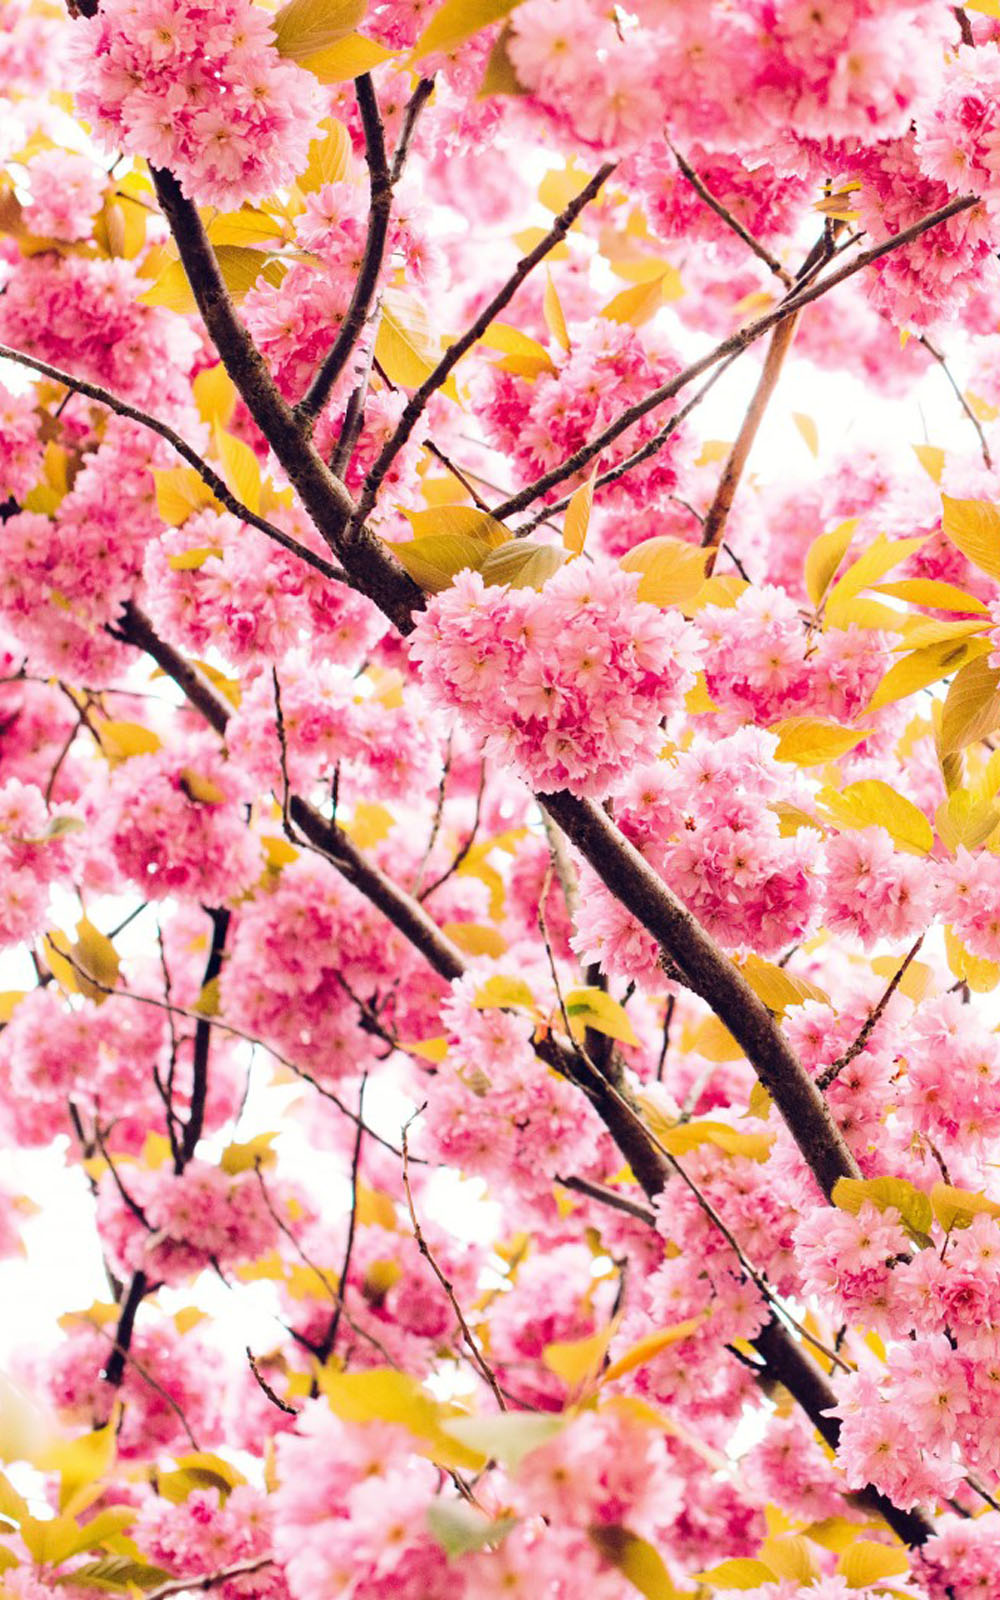 flowers wallpaper download for mobile,flower,blossom,cherry blossom,spring,plant